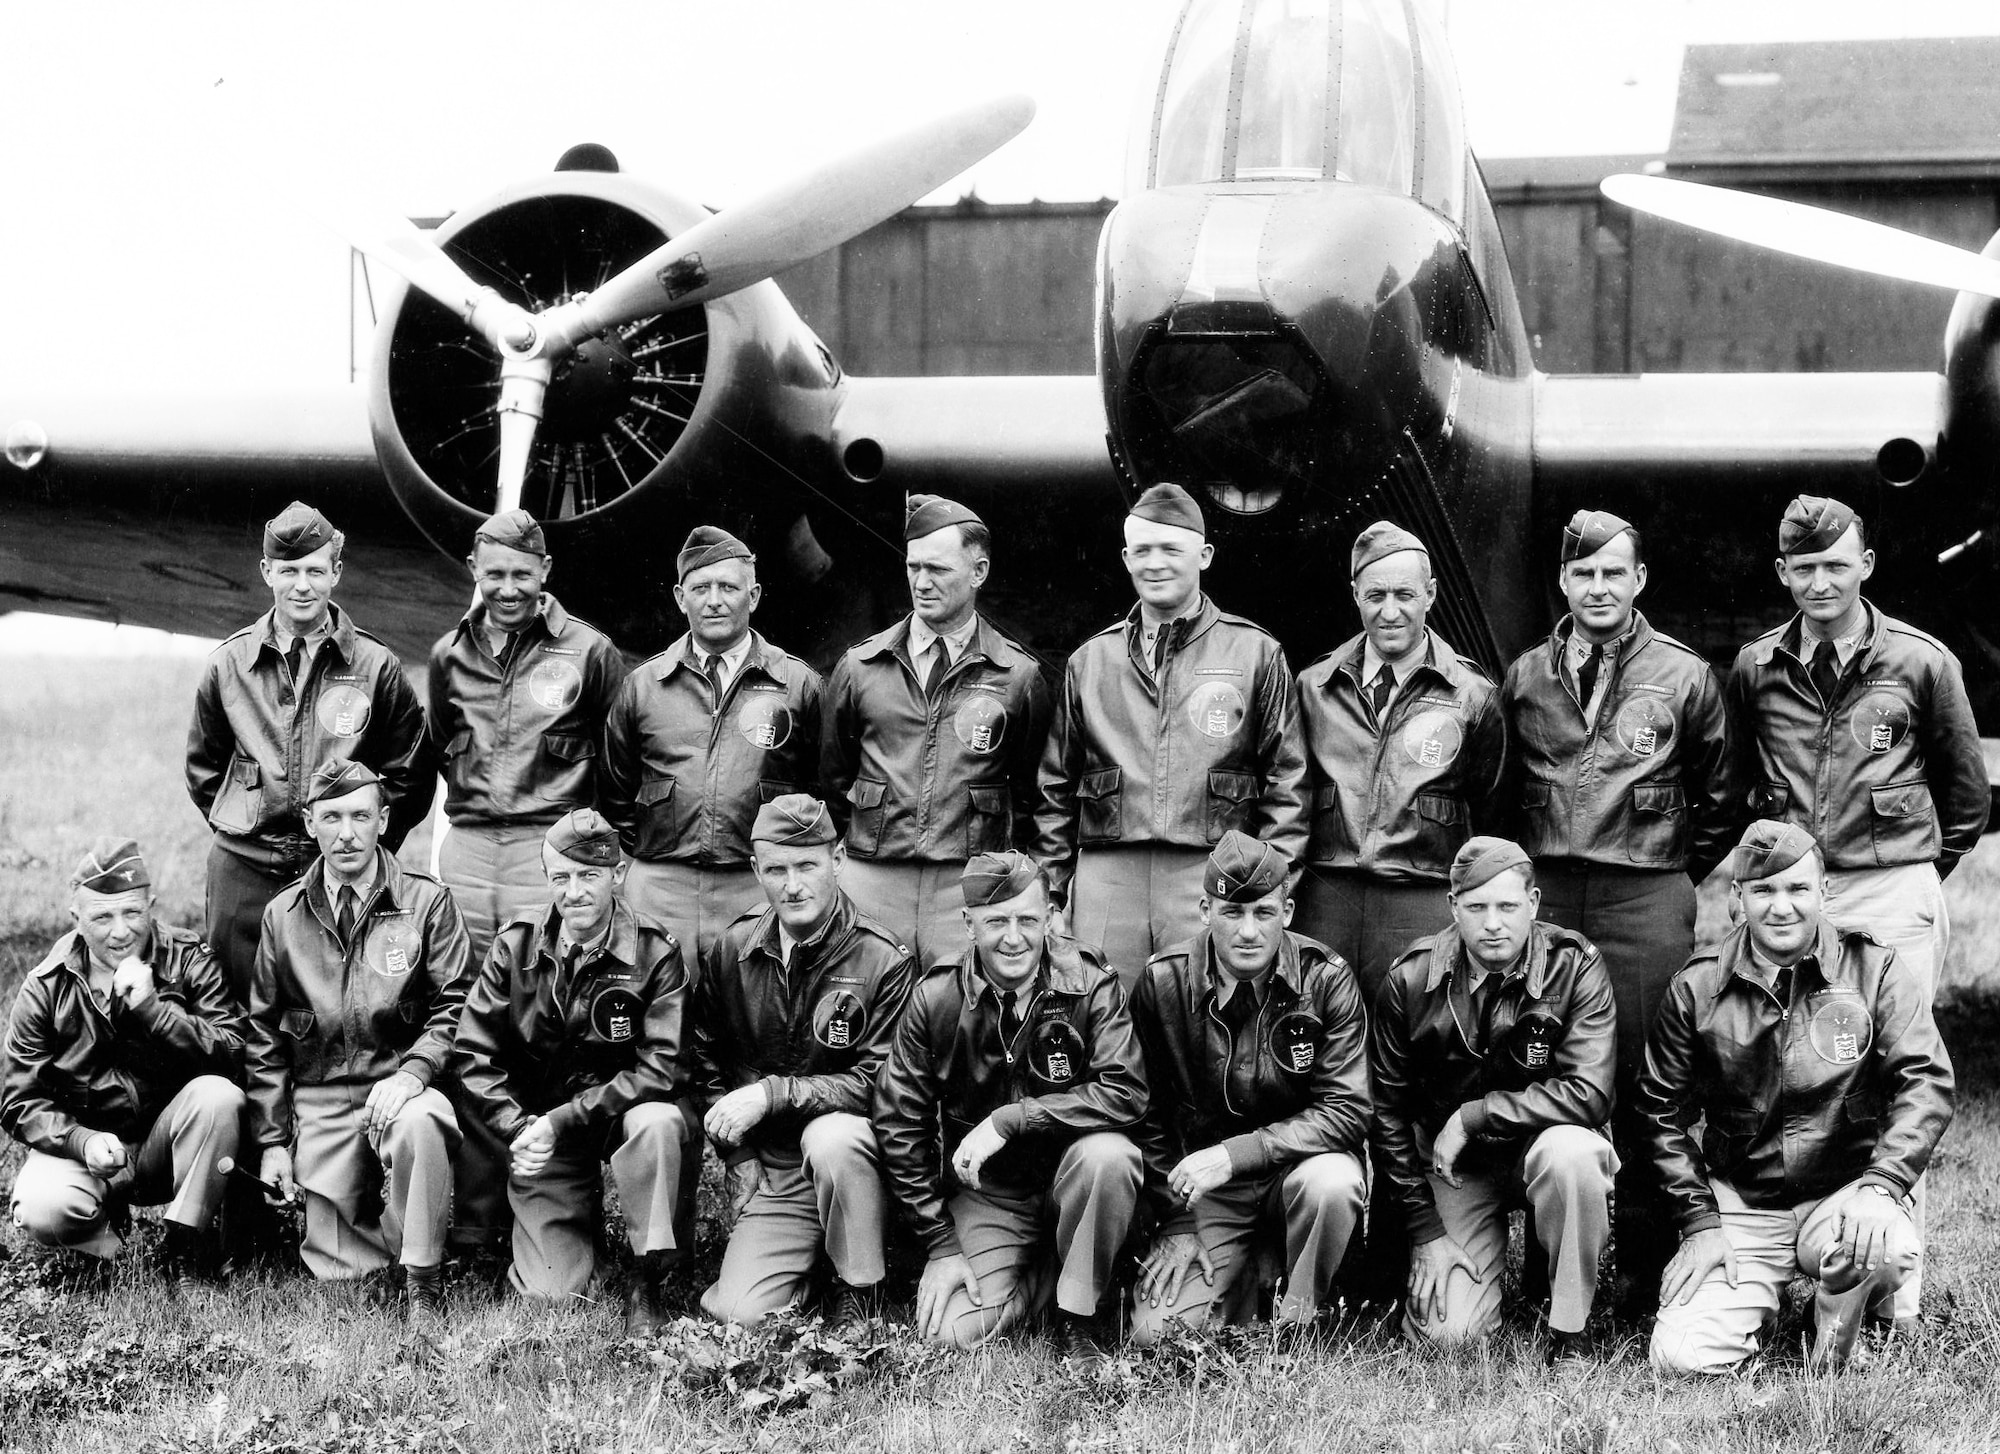 Officers of the 1934 Alaskan Flight.